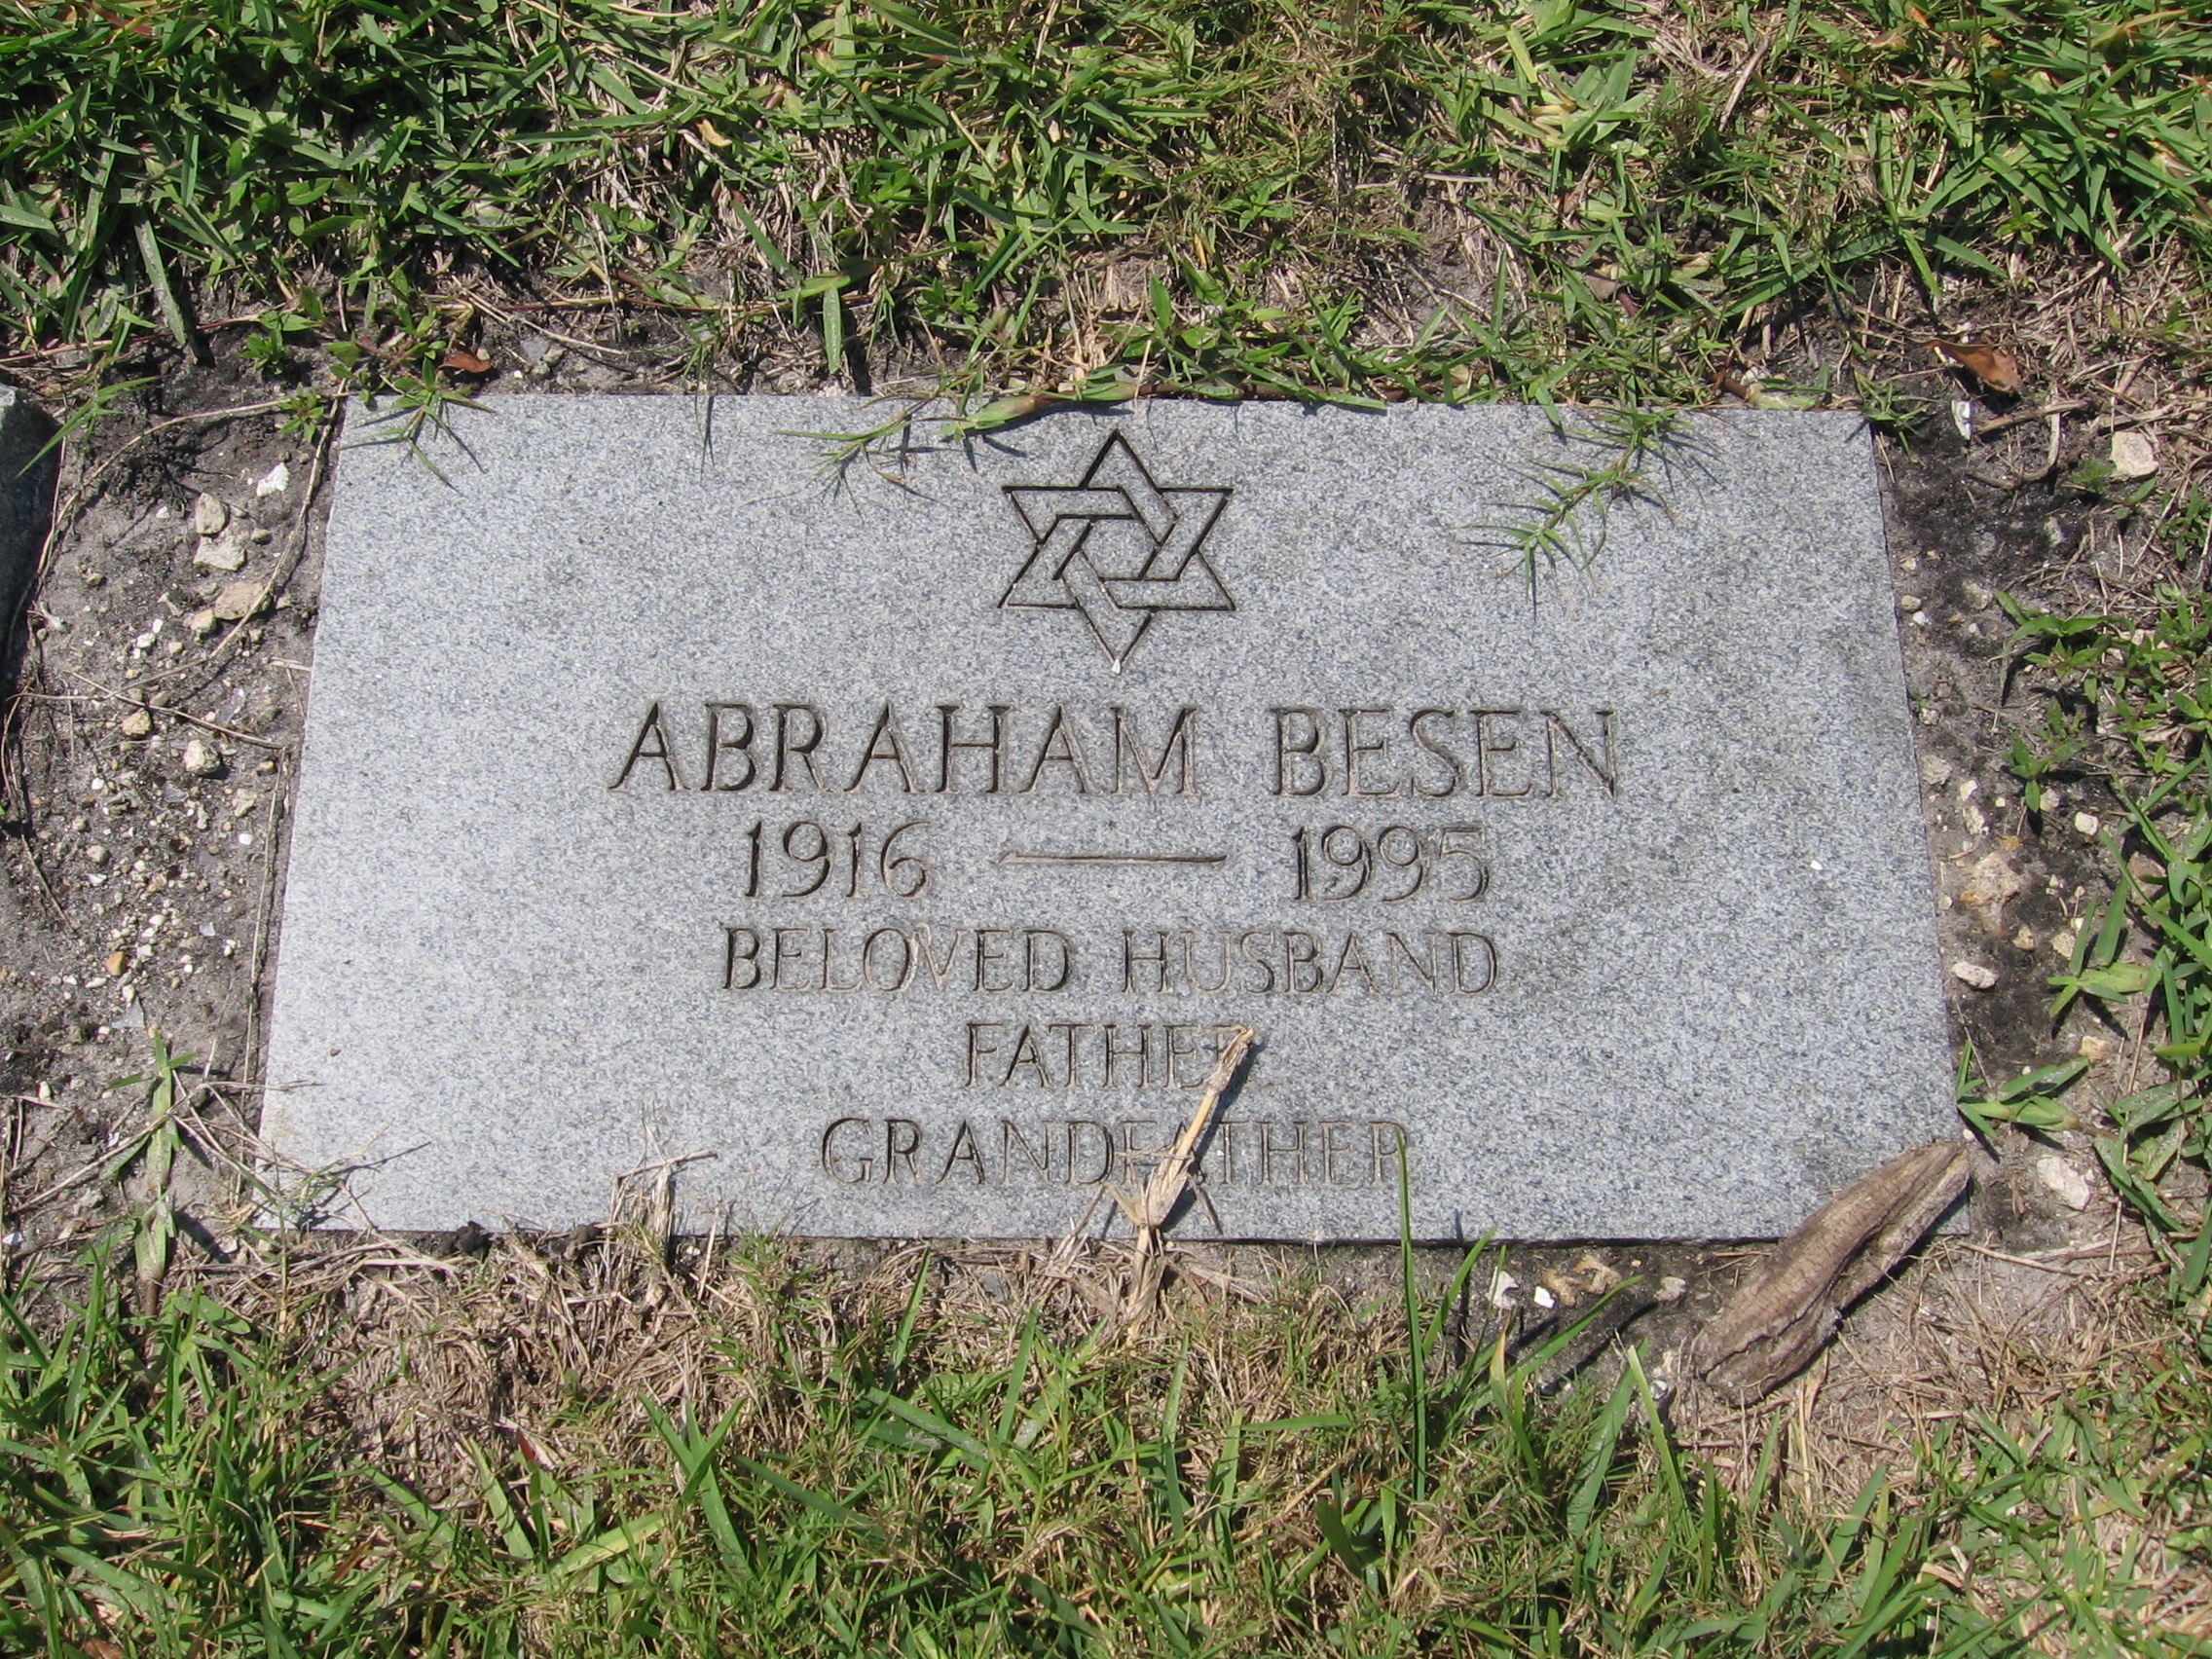 Abraham Besen